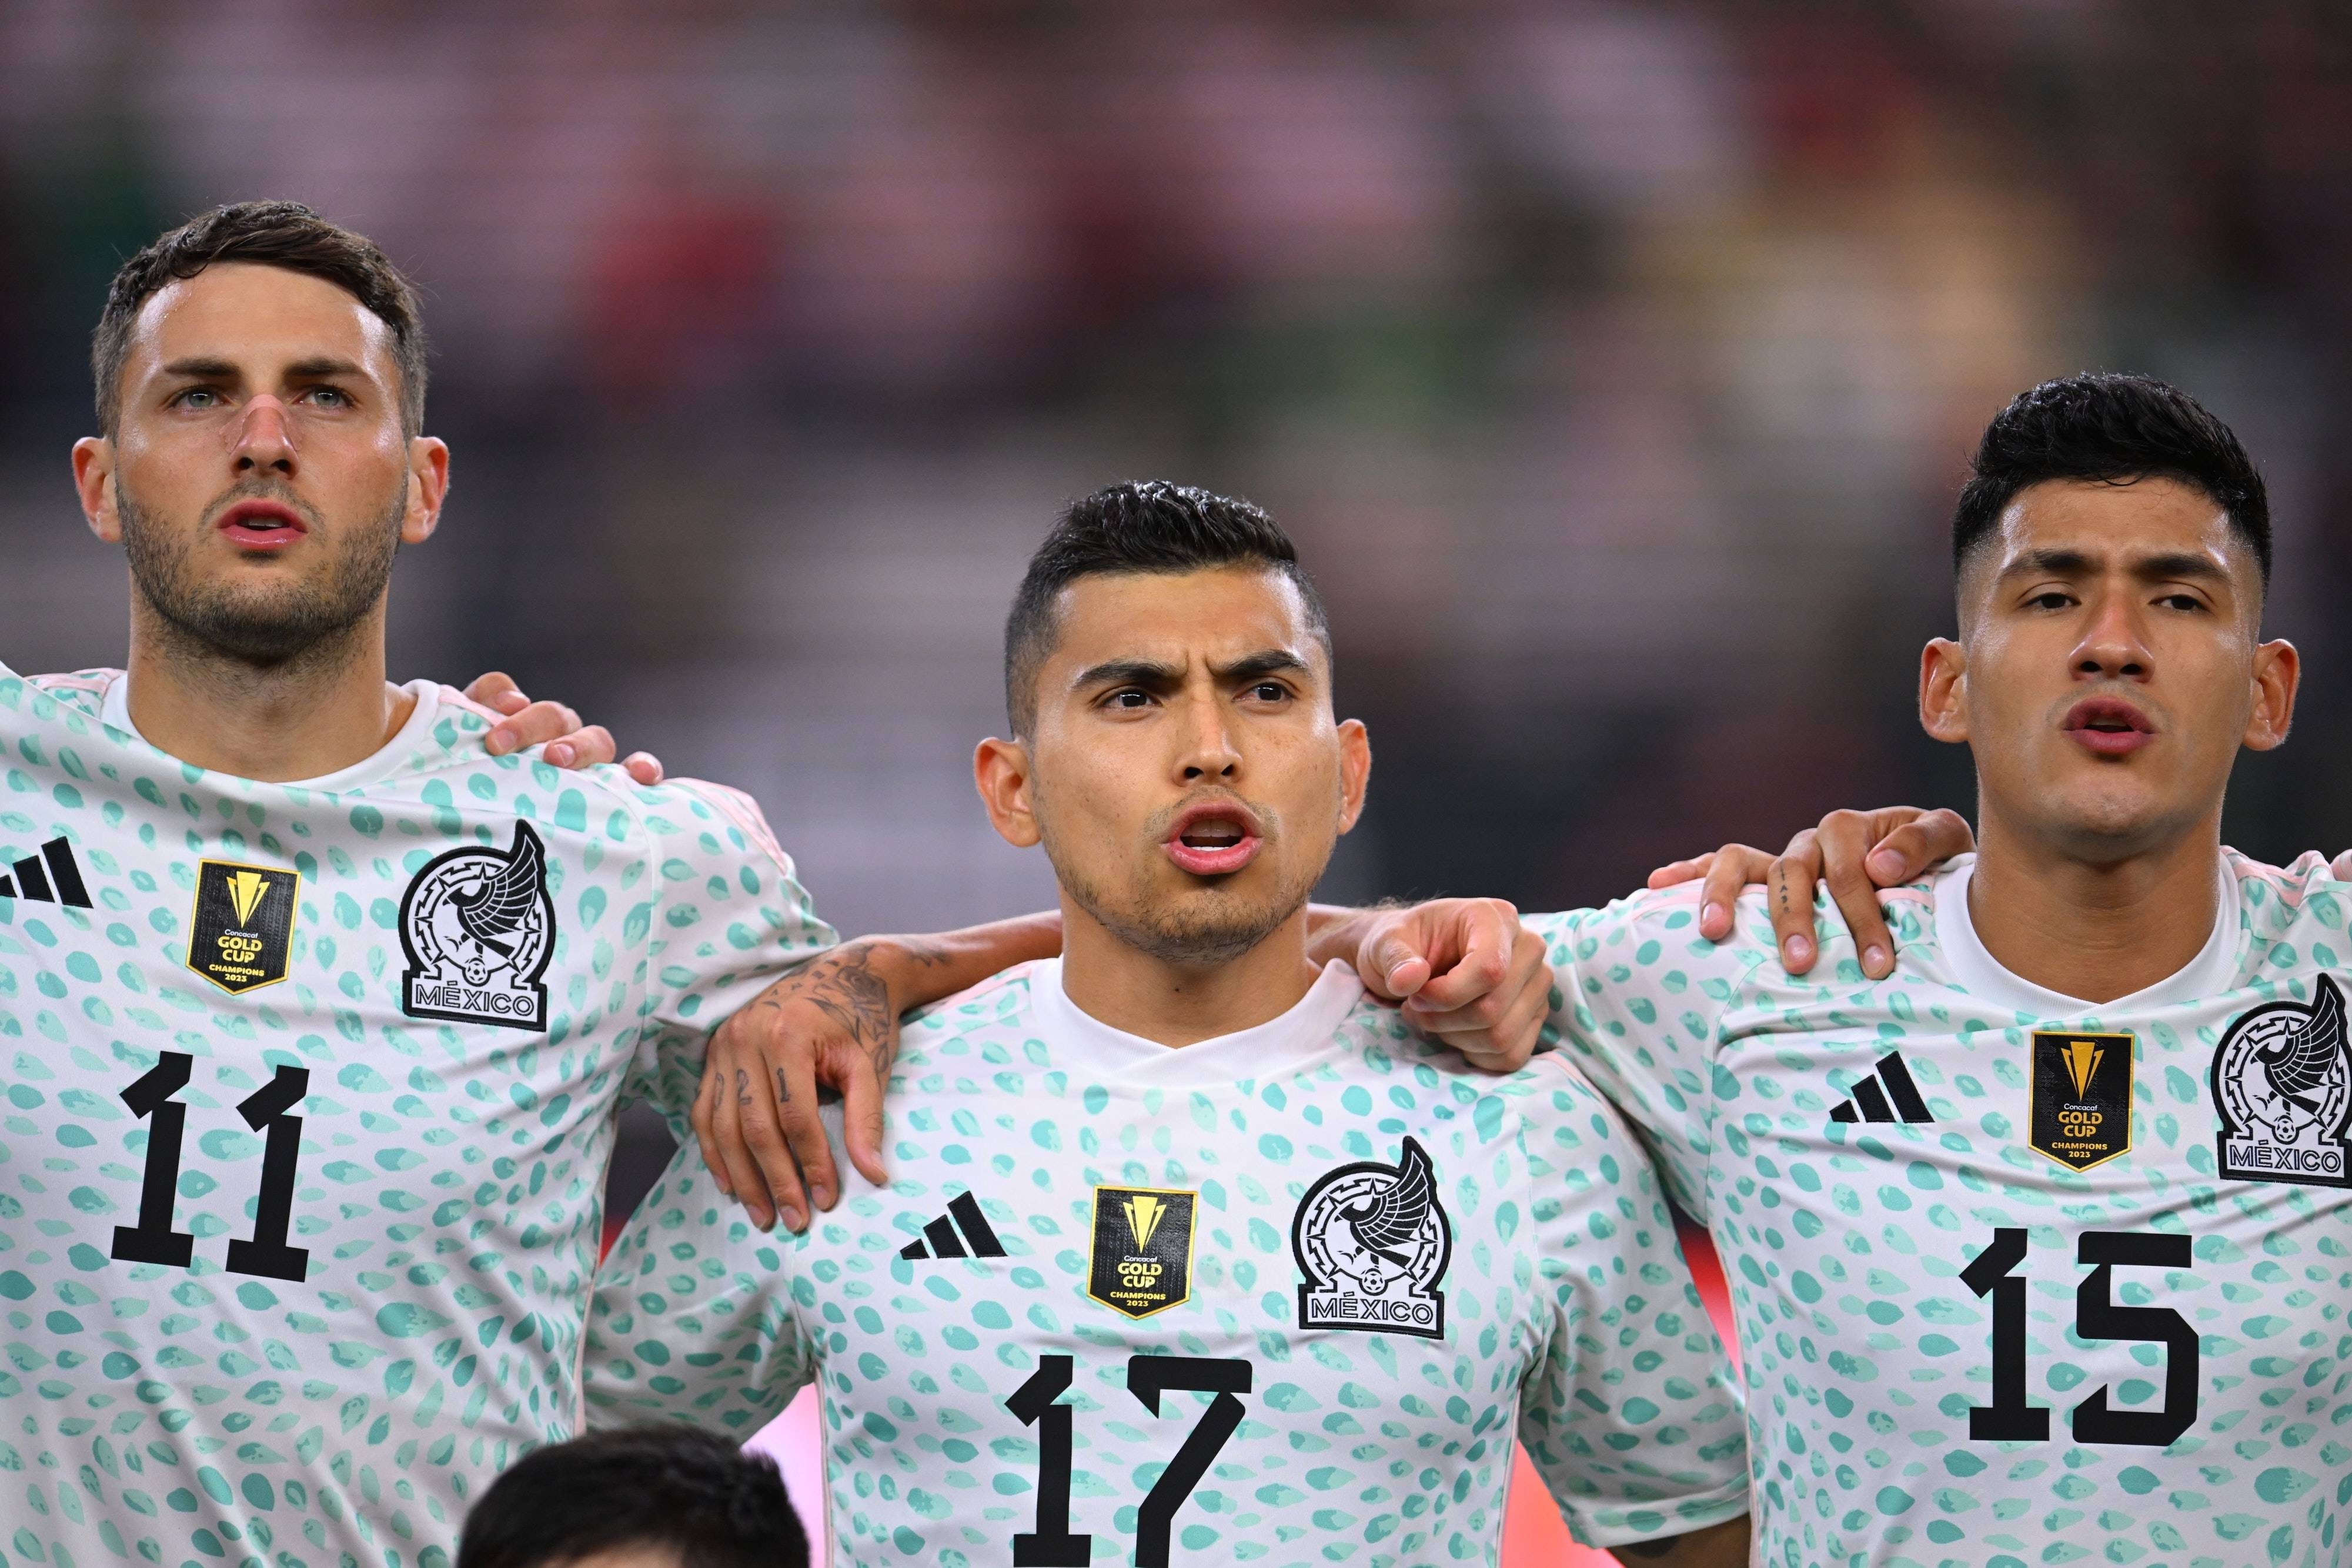 La selección mexicana estrenará camiseta color naranja como segundo  uniforme (FOTO)